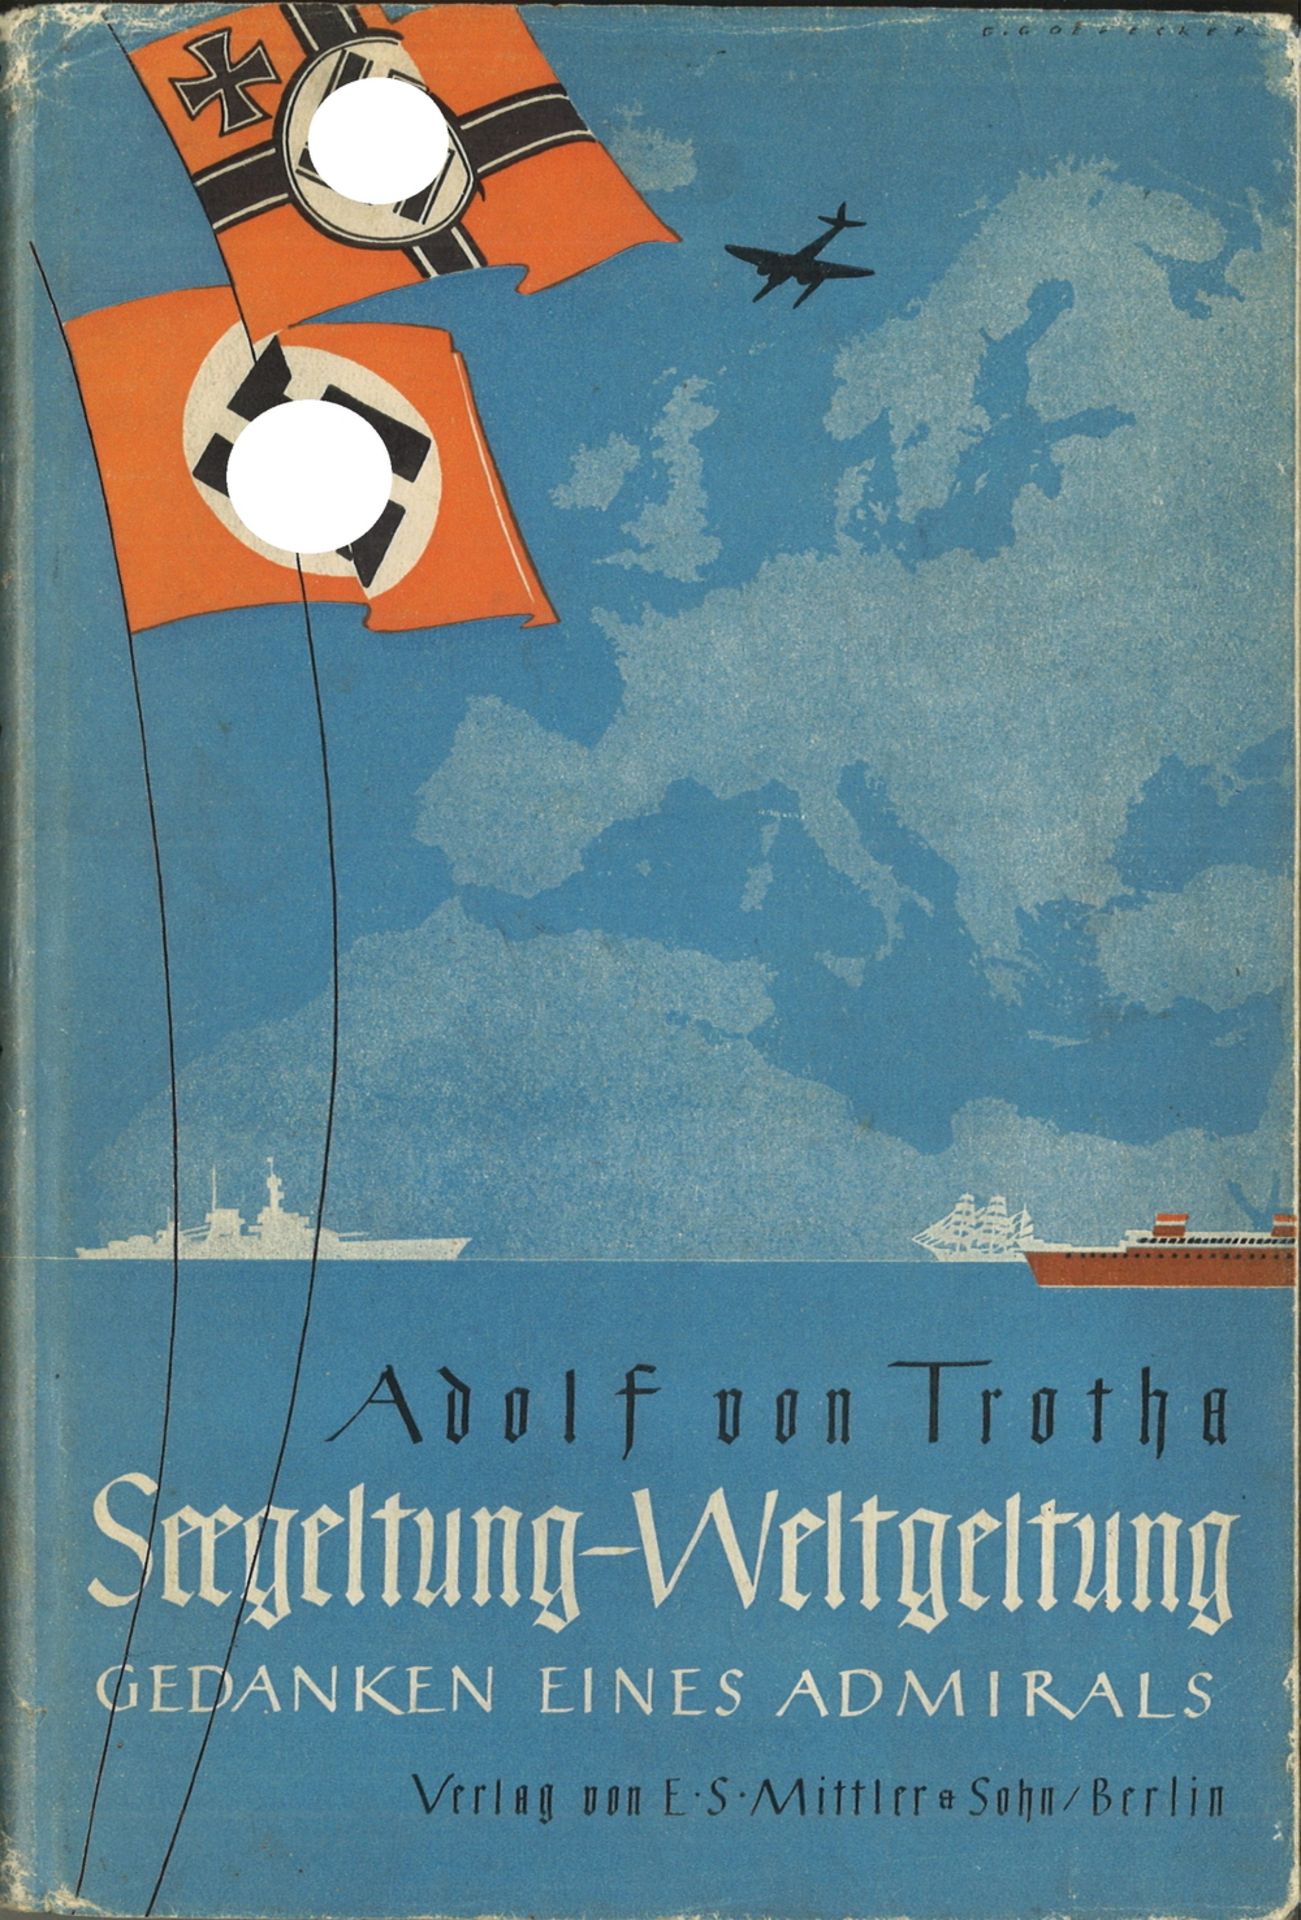 Buch "Seegeltung - Weltgeltung, Gedanken eines Admirals" von Adolf von Trotha, 1940, 140 Seiten, mit